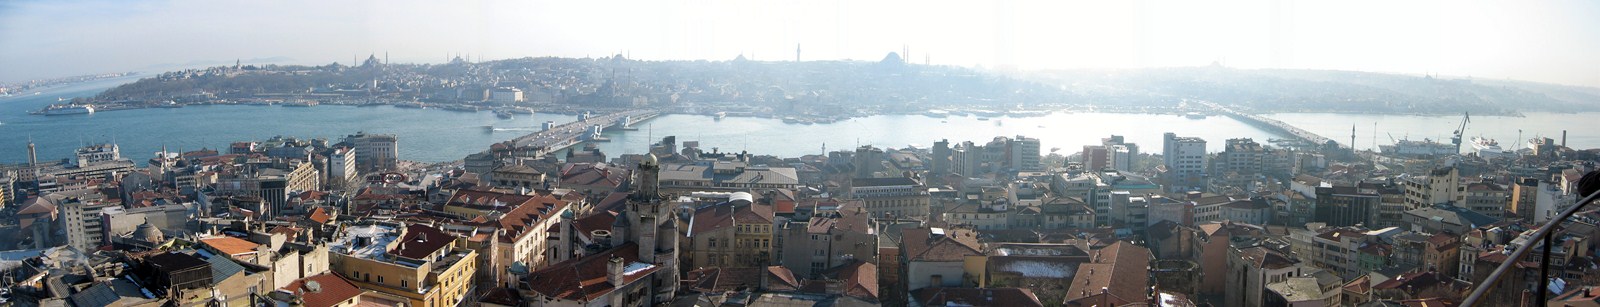 Panorama-Blick vom Galataturm auf Istanbul